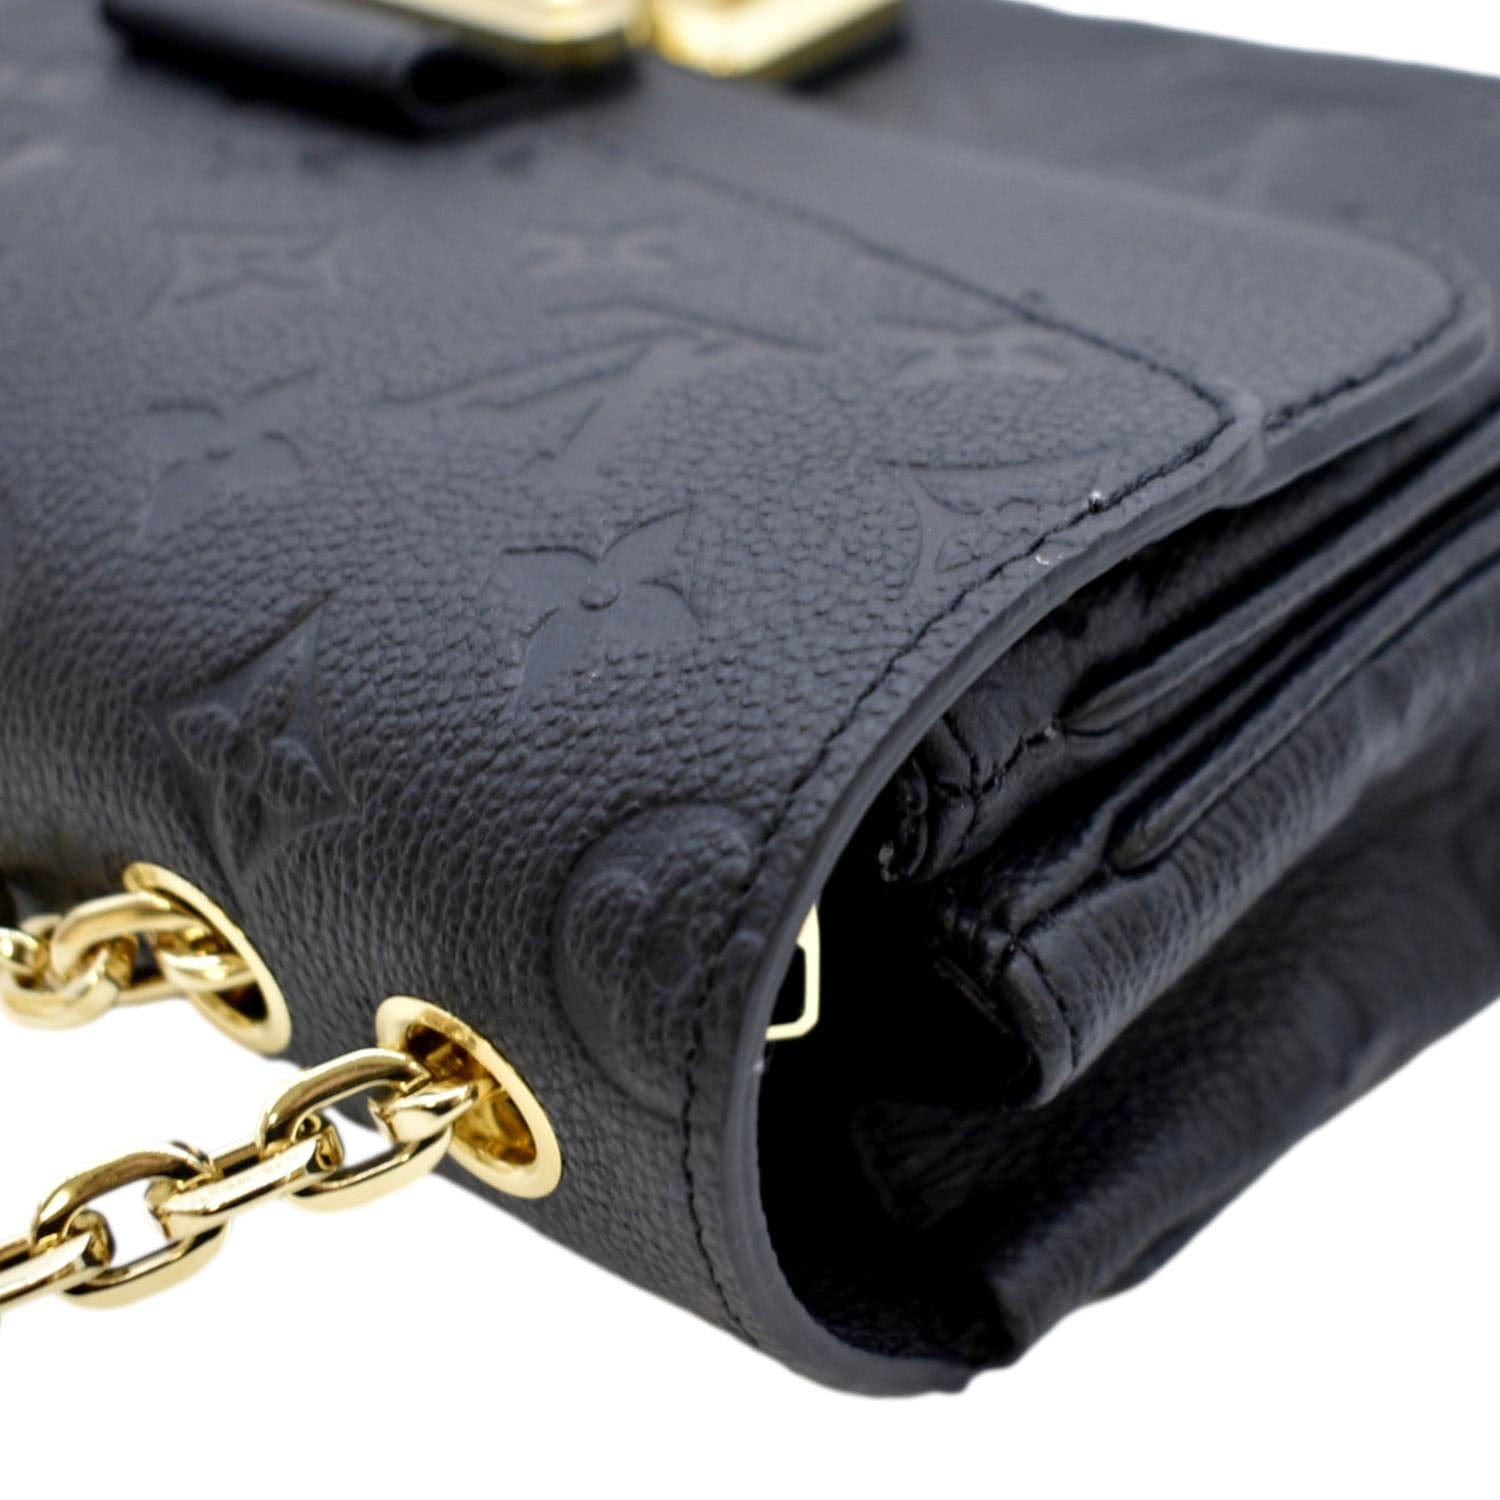 LOUIS VUITTON Marceau PM Monogram Empreinte Leather Shoulder Bag Black